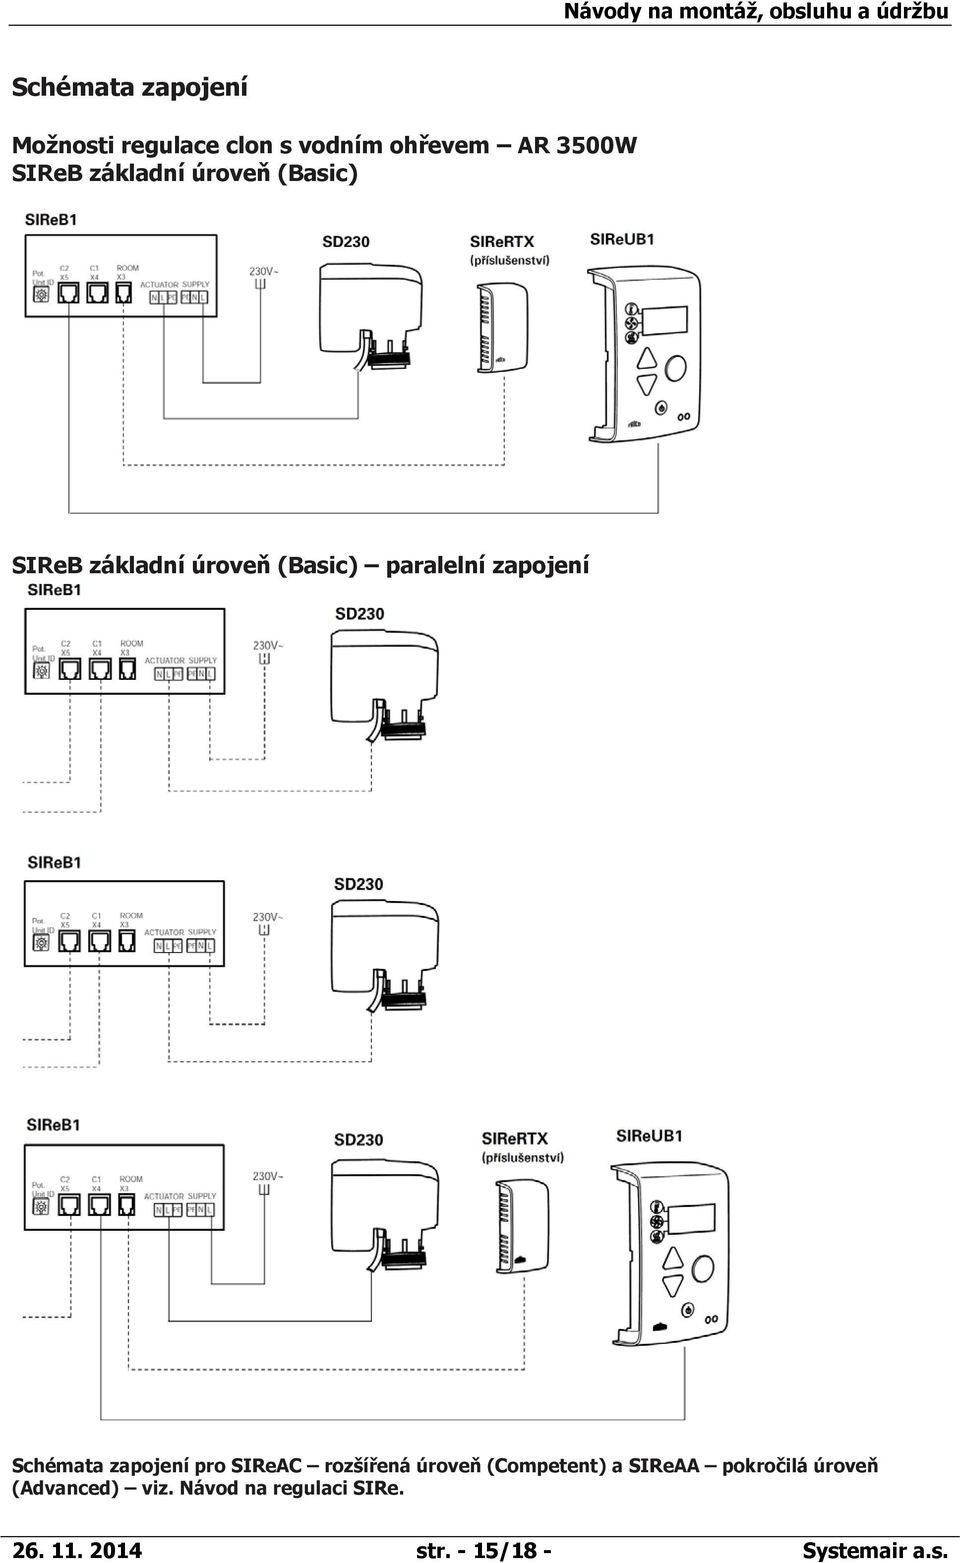 paralelní zapojení Schémata zapojení pro SIReAC rozšířená úroveň (Competent) a SIReAA